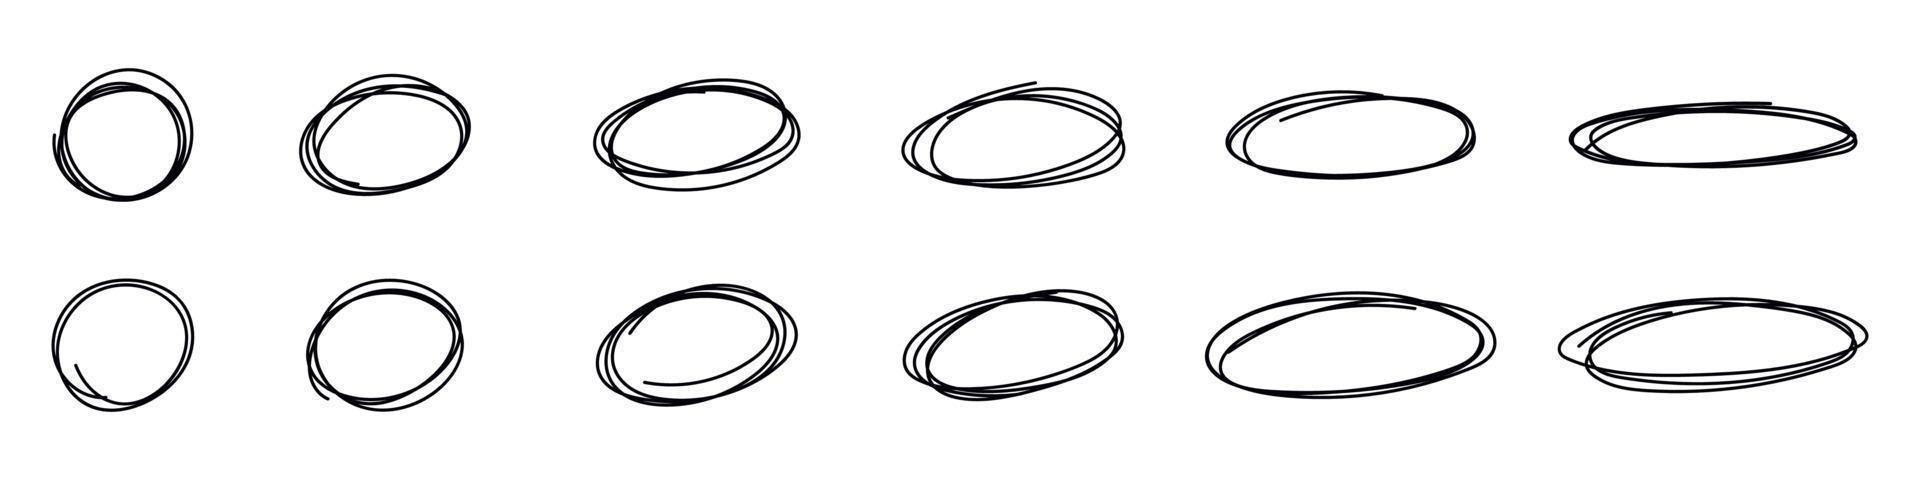 Markieren Oval Kreis Rahmen. Gekritzel Hand gezeichnet Bleistift Linien. runden Bürste markieren. Vektor isoliert Illustration